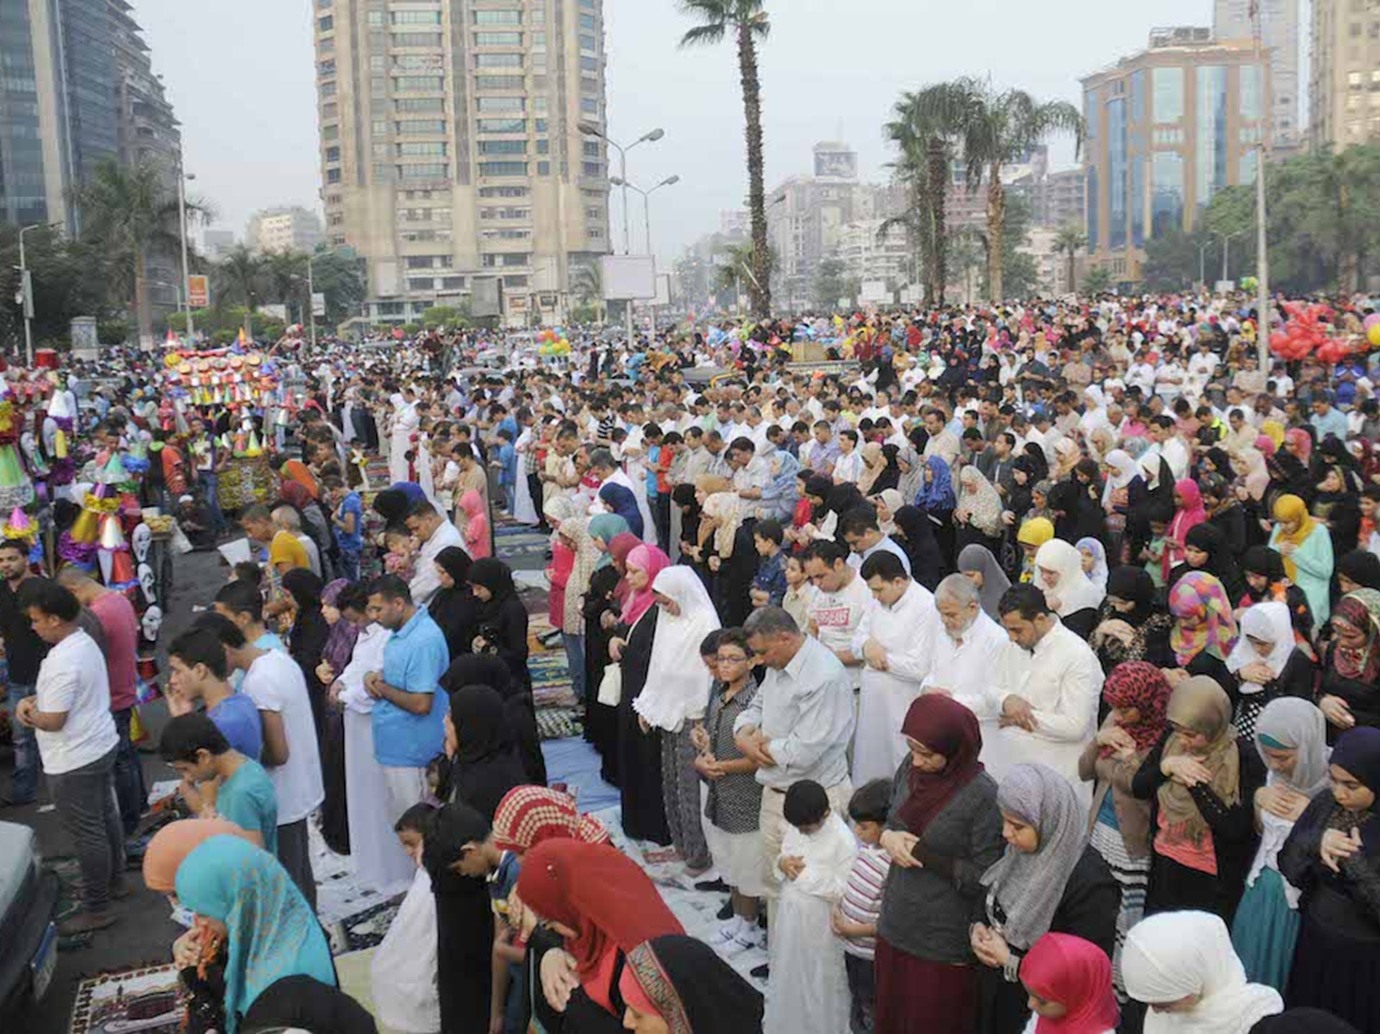 الحكومة المصرية تعلن قواعد وضوابط صلاة عيد الأضحى 2020 وتوضيح حول عودة صلاة الجمعة